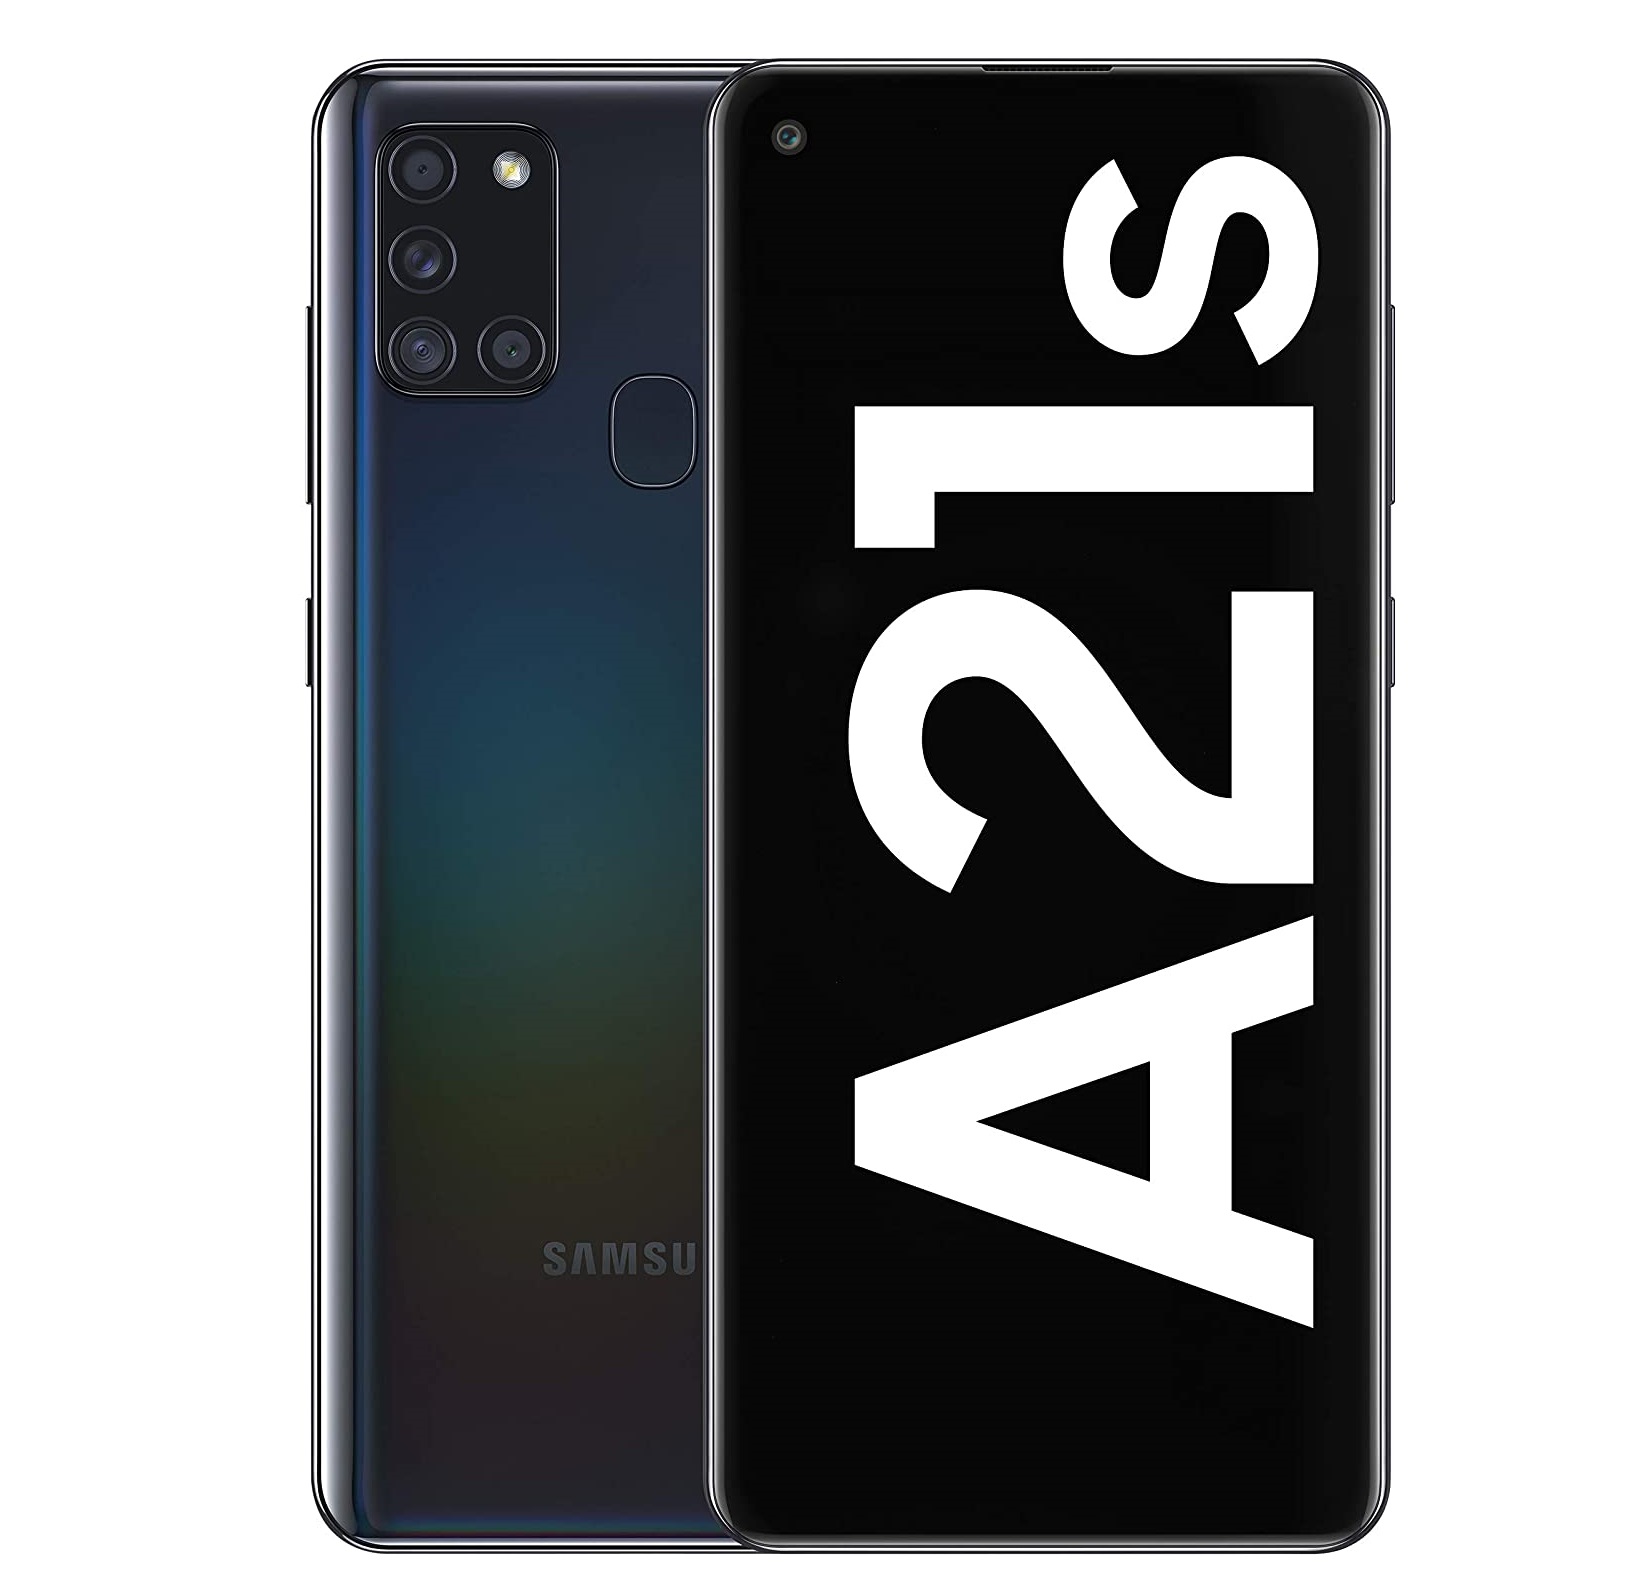 Opiniones de Samsung Galaxy A21s positivas y negativas